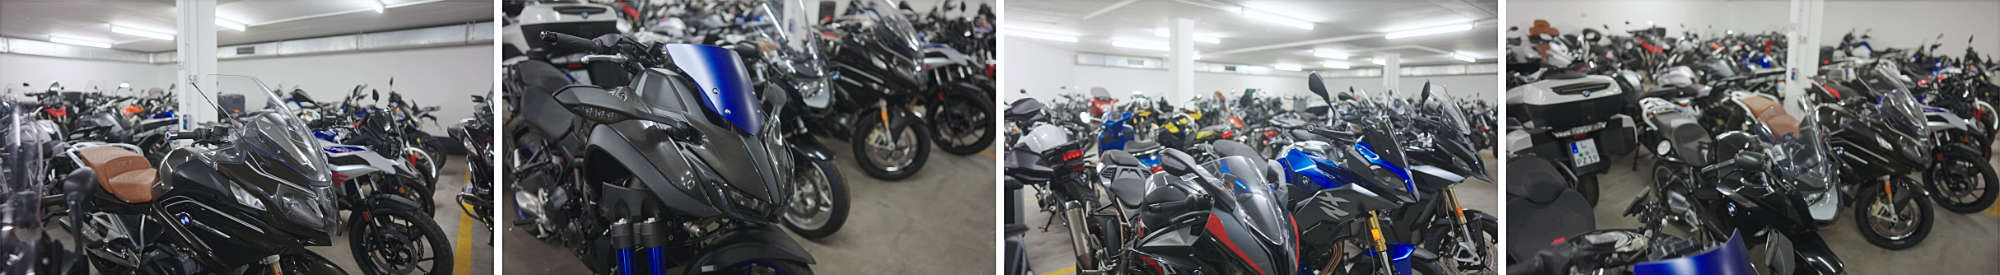 Sicher und trocken überwintern - in unserer Motorrad-Garage in Leipzig